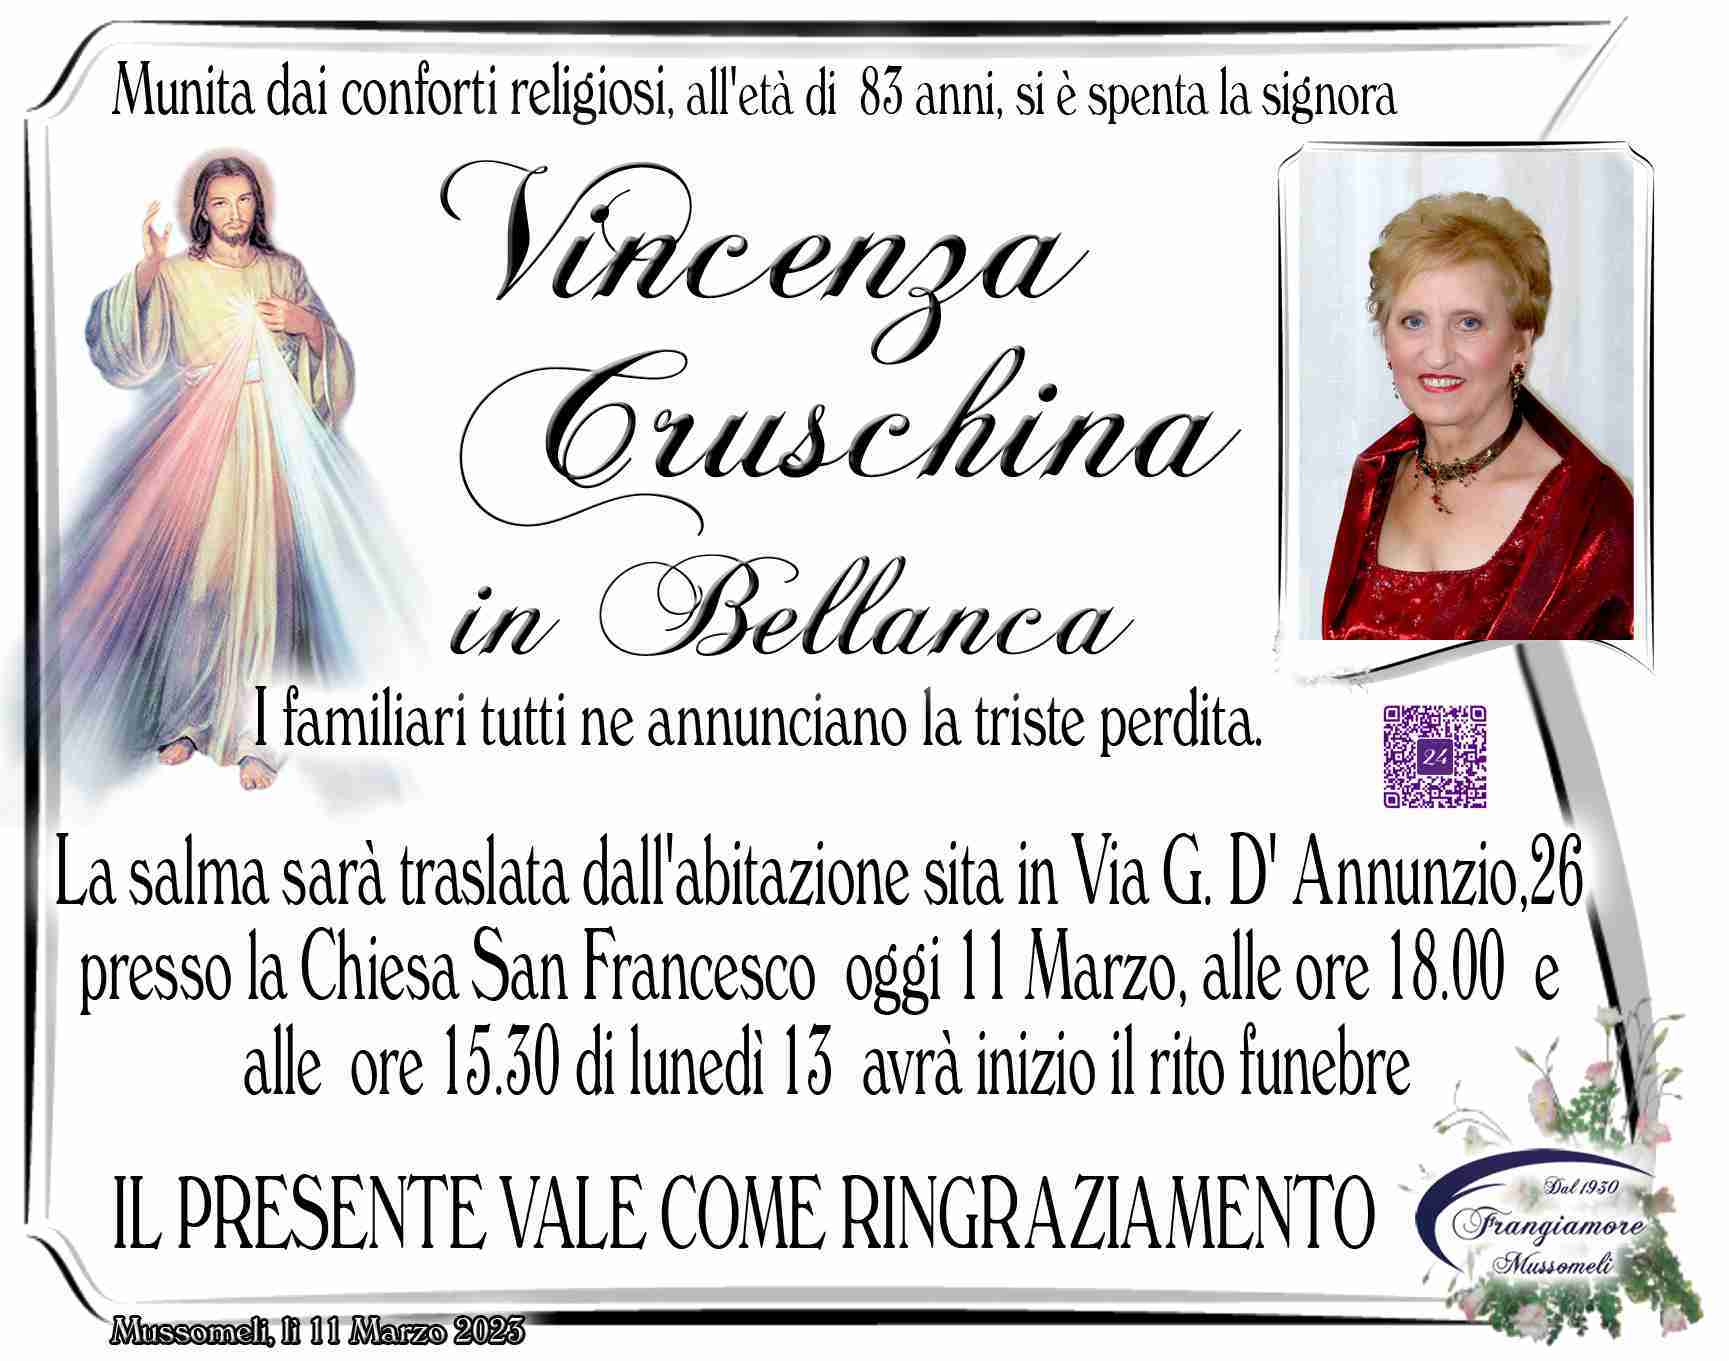 Cruschina Vincenza